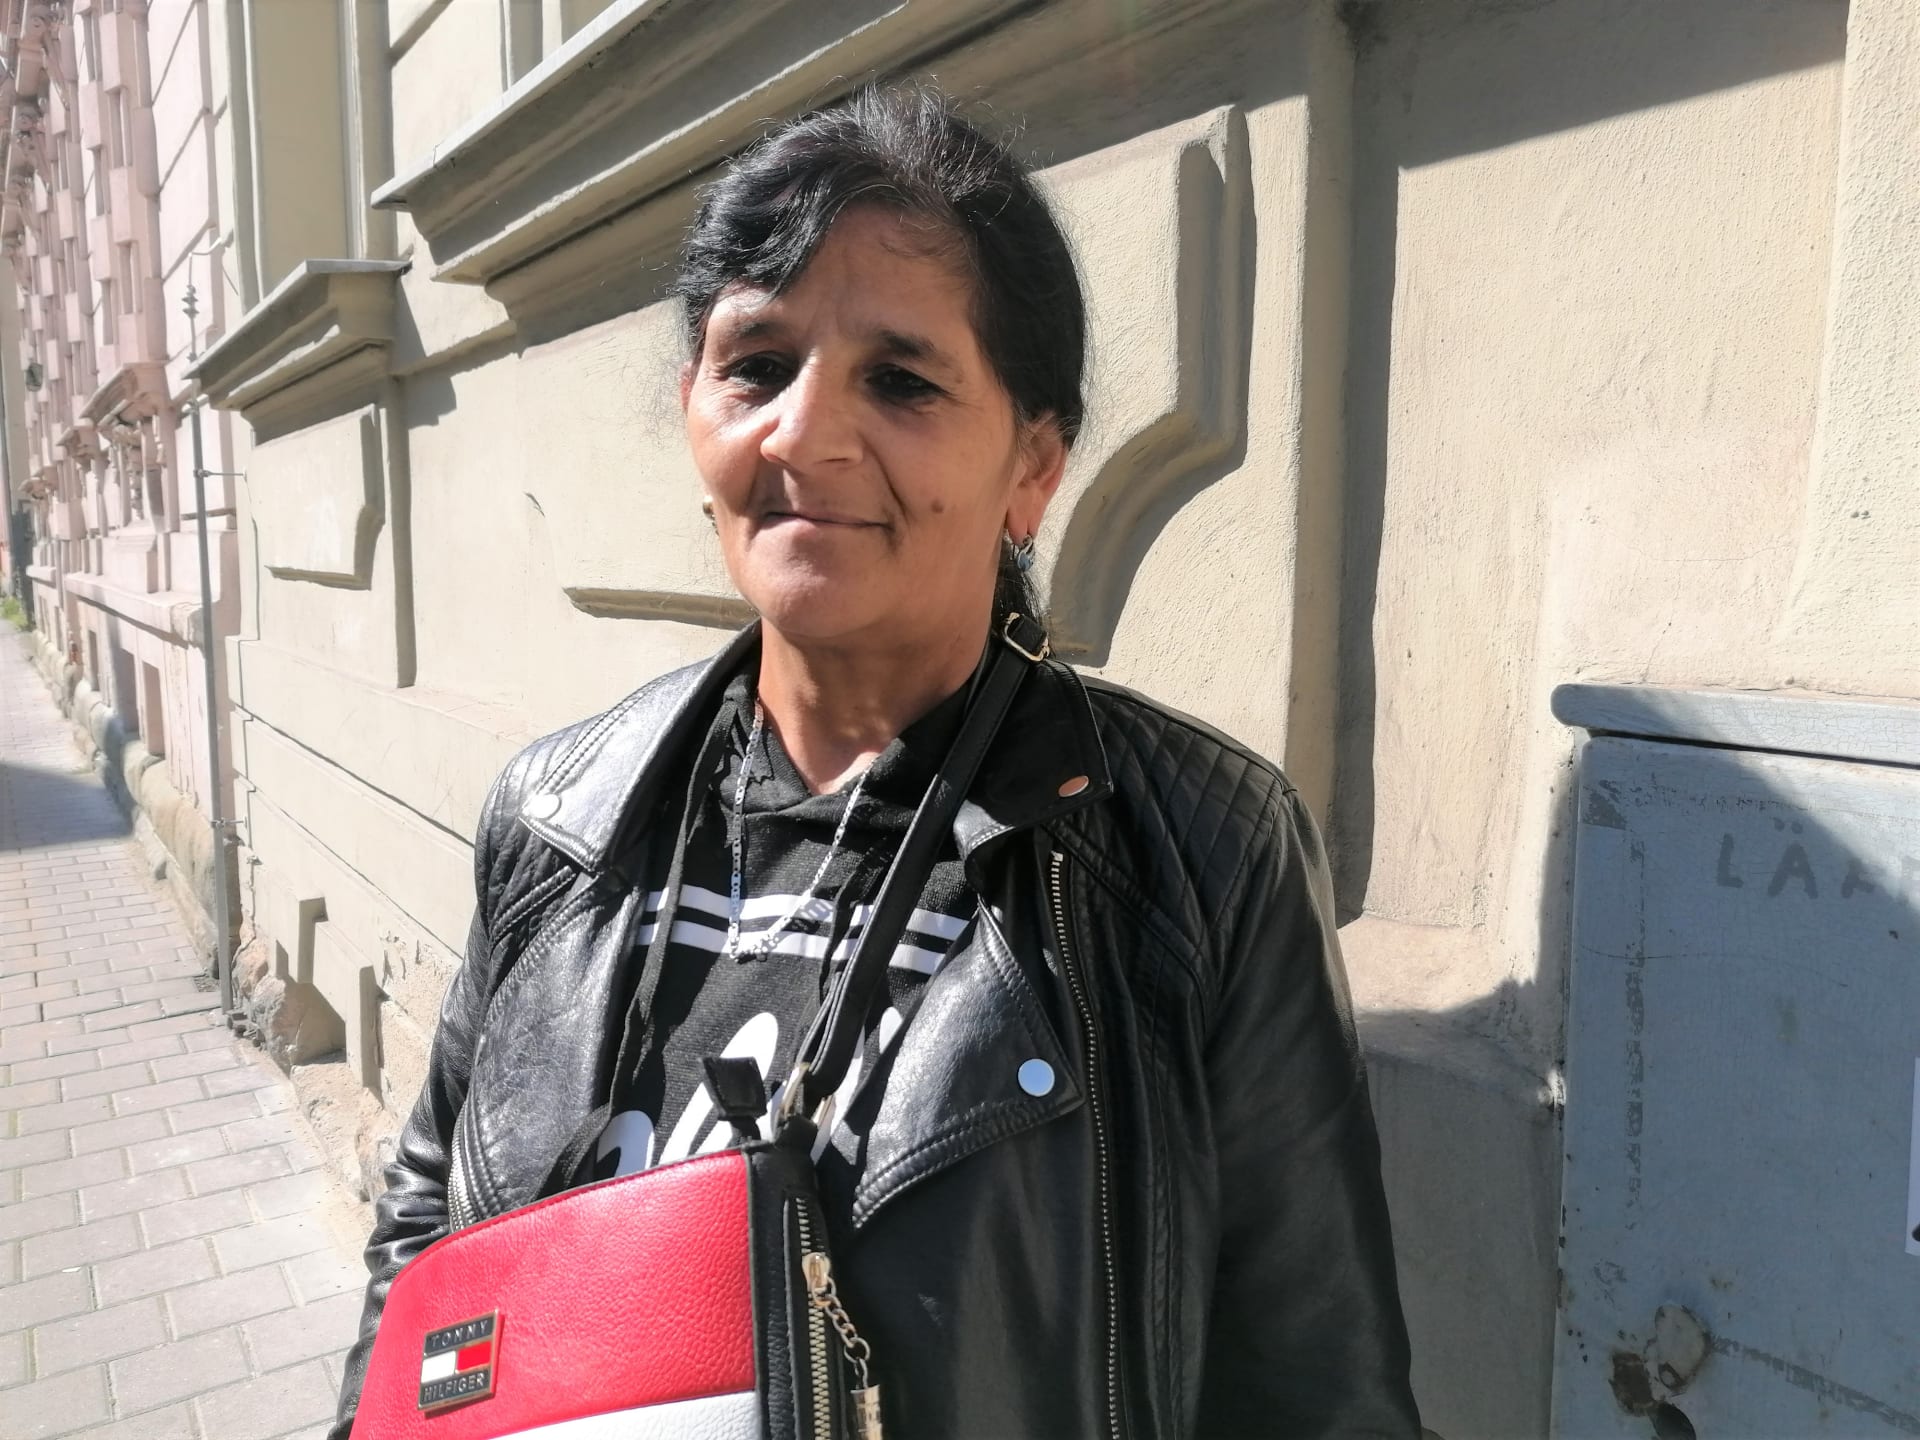 56letá Darina Žigová volit nepůjde. Ve vyloučené lokalitě v Ostravě-Přívoze je to většinový přístup.